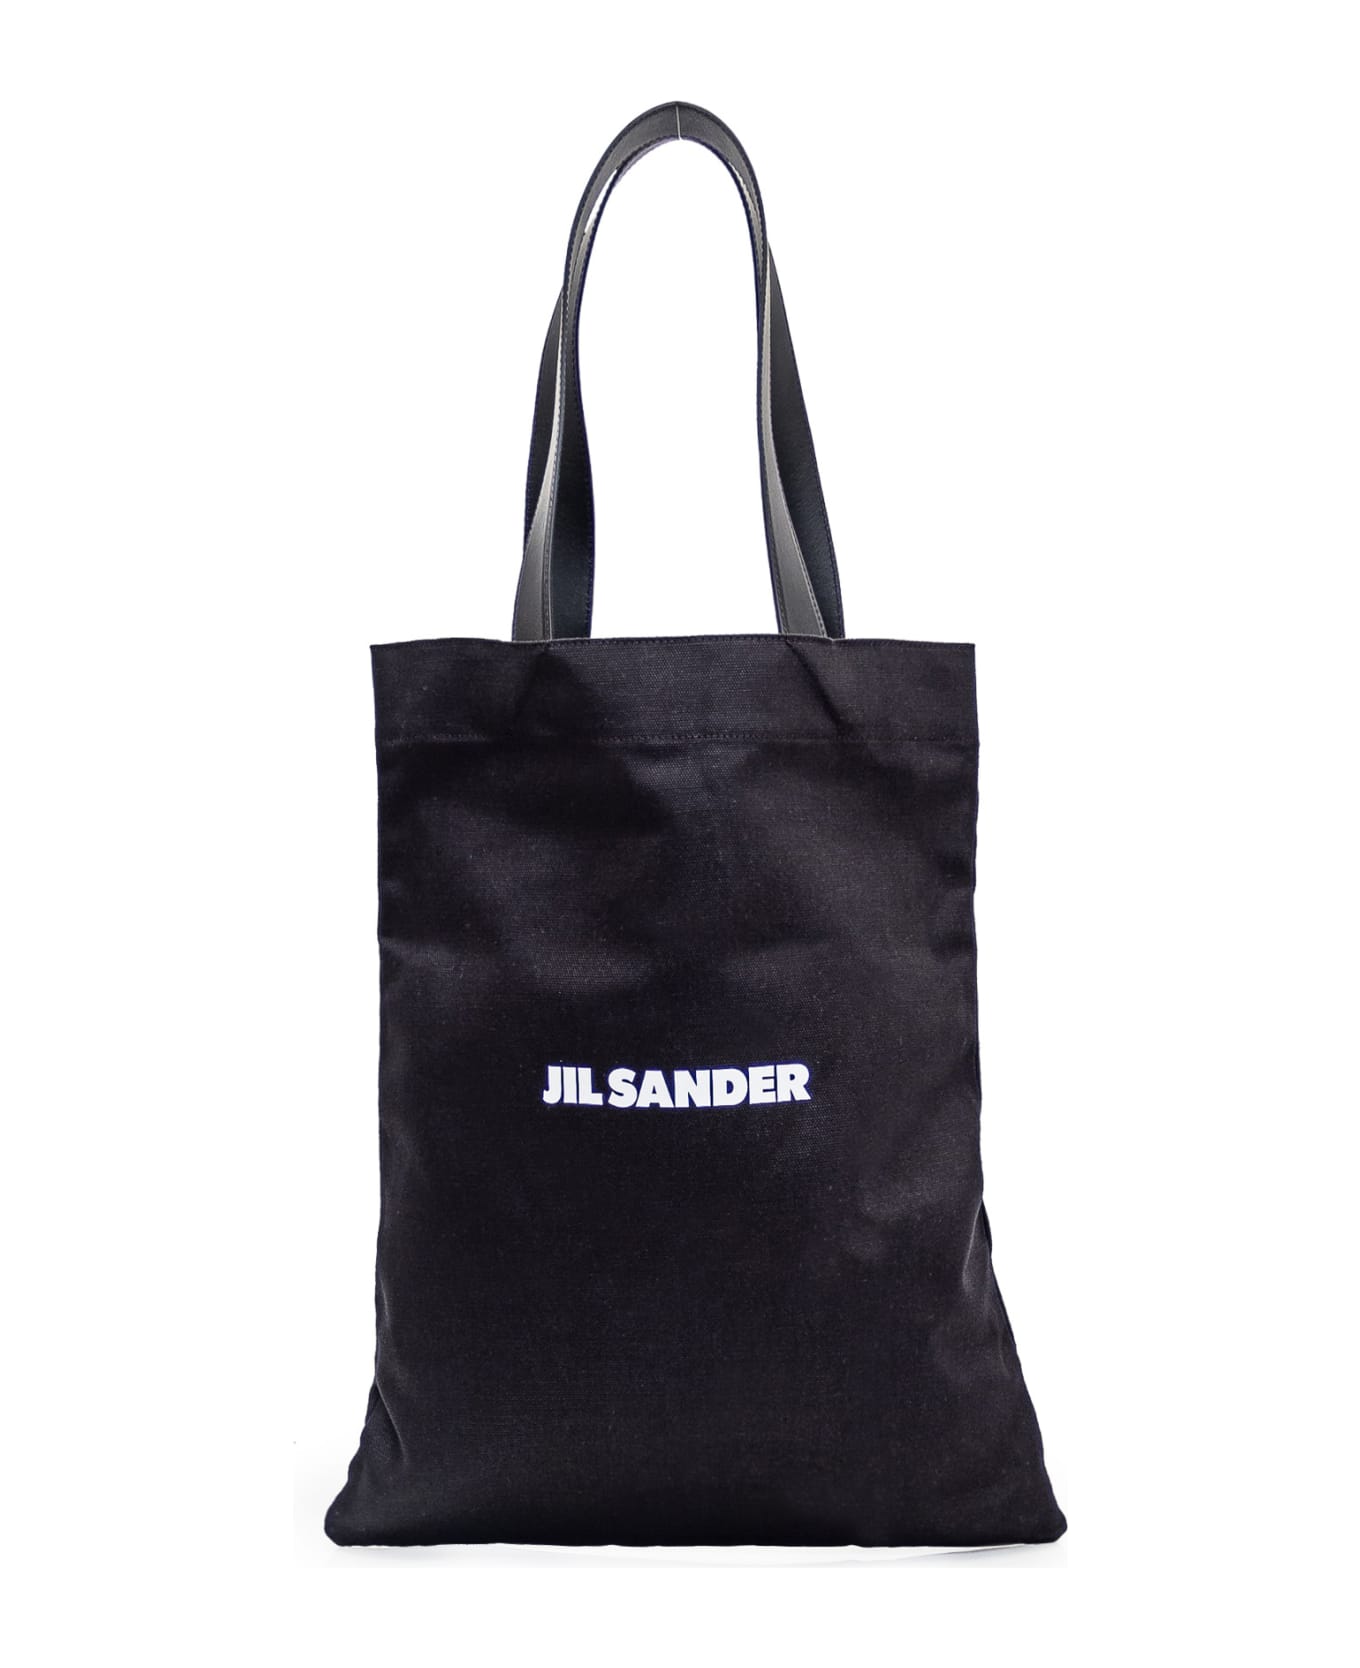 Jil Sander Black Tela Bag - 001